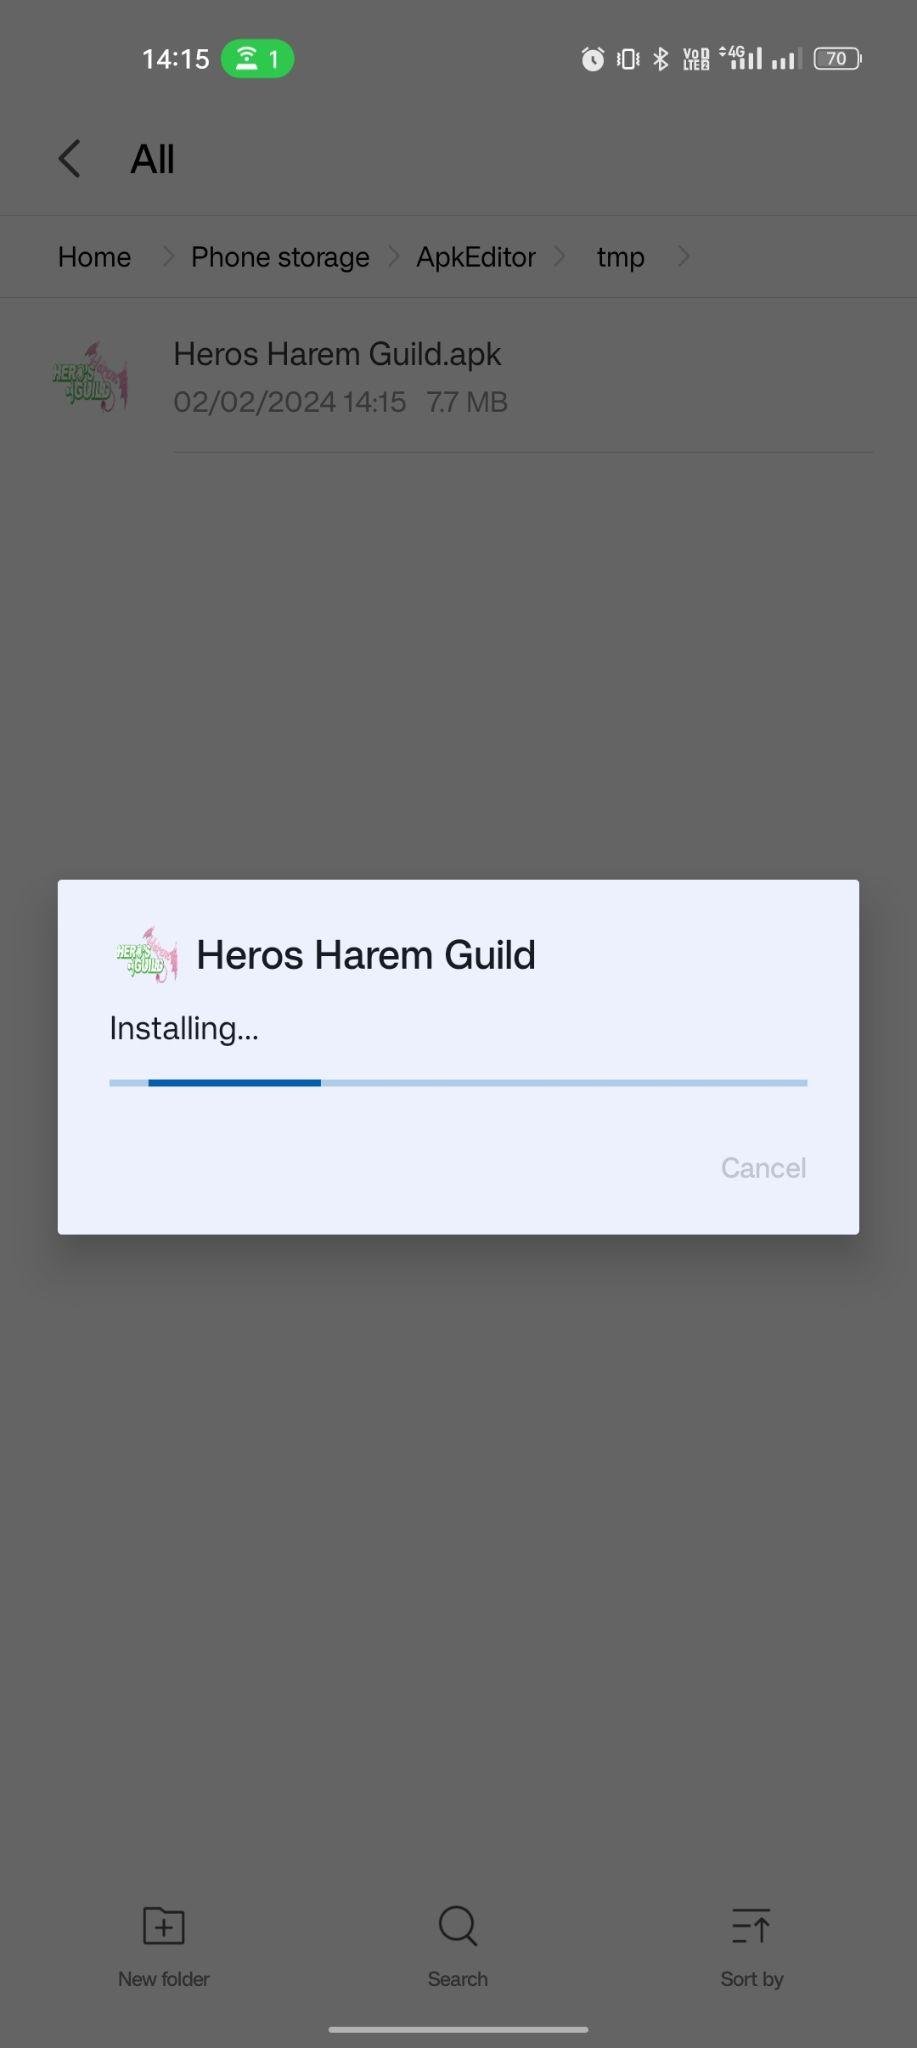 Heros Harem Guild apk installing